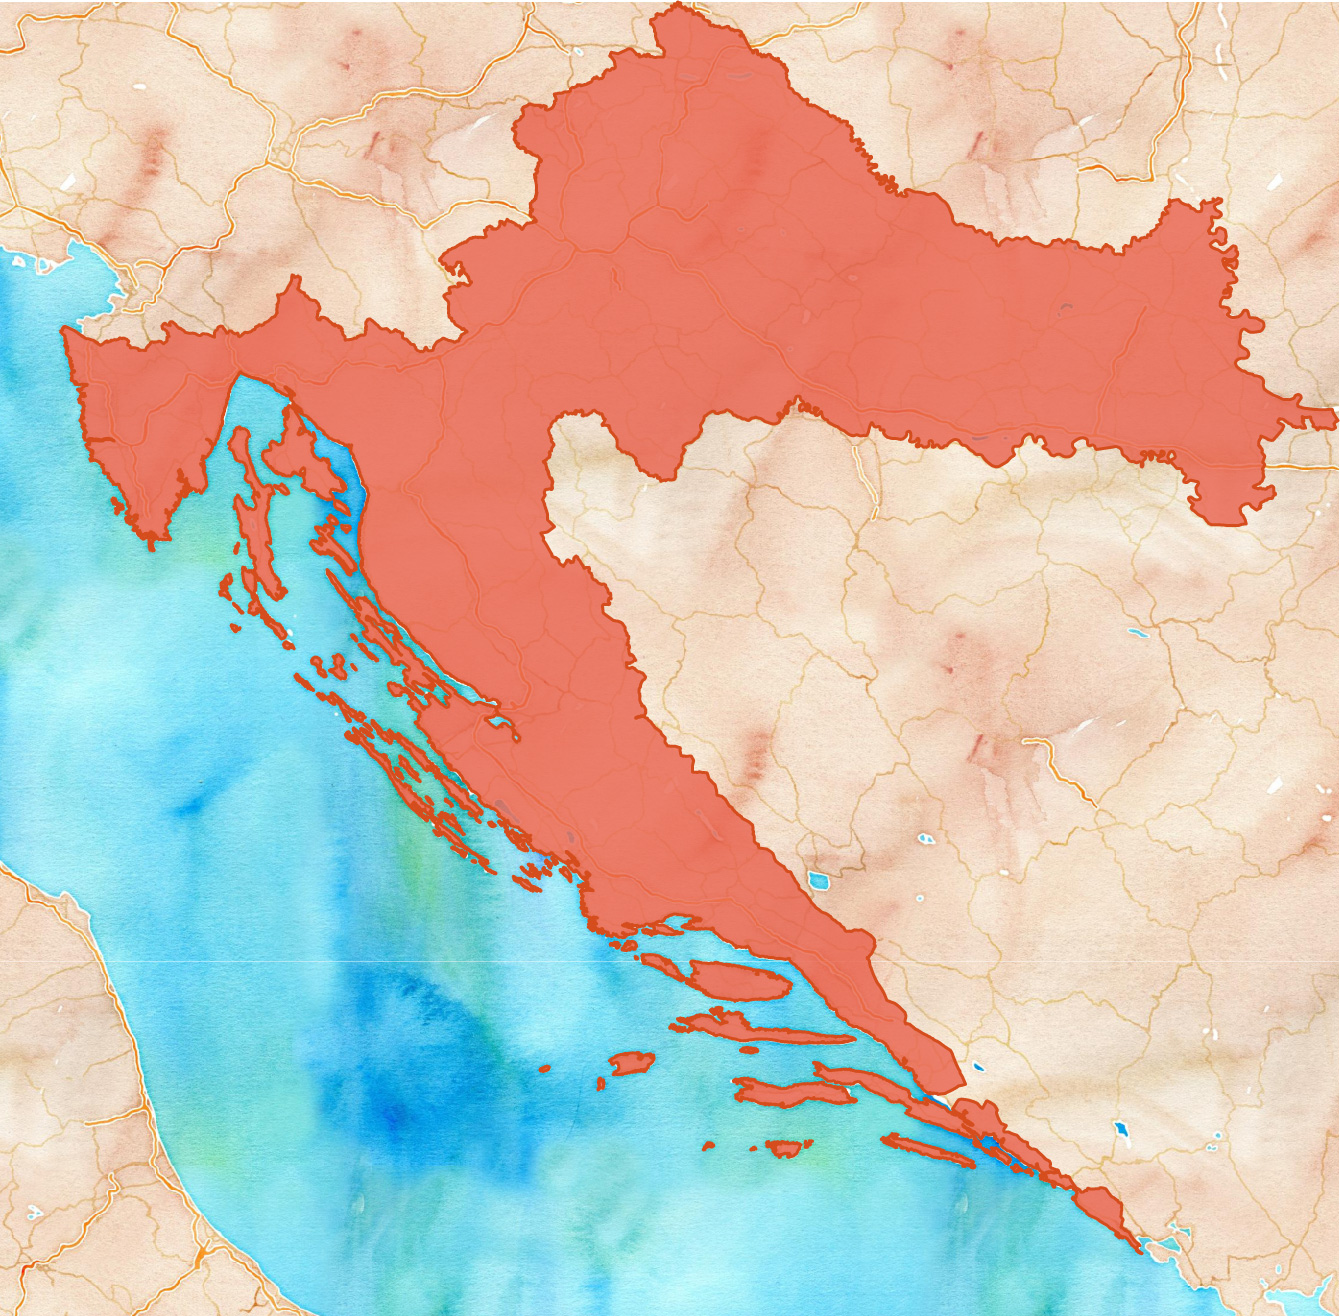 Zemljopisna Karta, Hrvatska označena črljeno